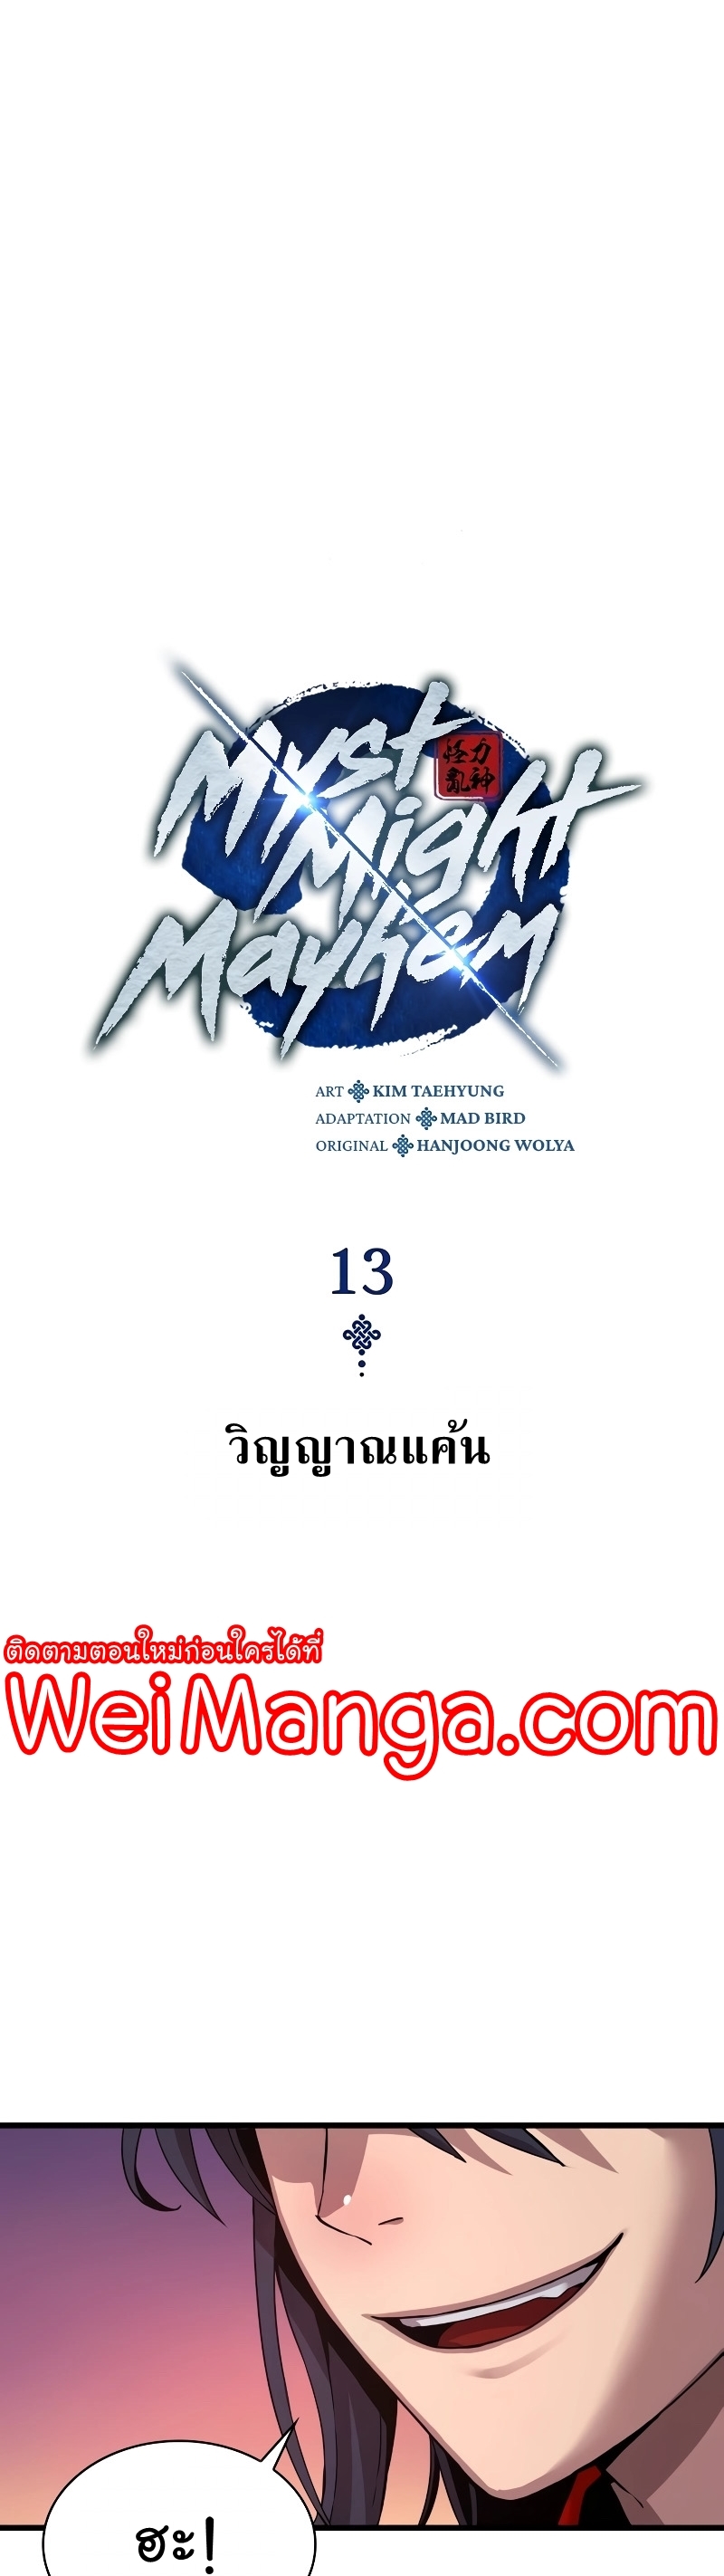 อ่านมังงะ Myst, Might, Mayhem ตอนที่ 13/8.jpg